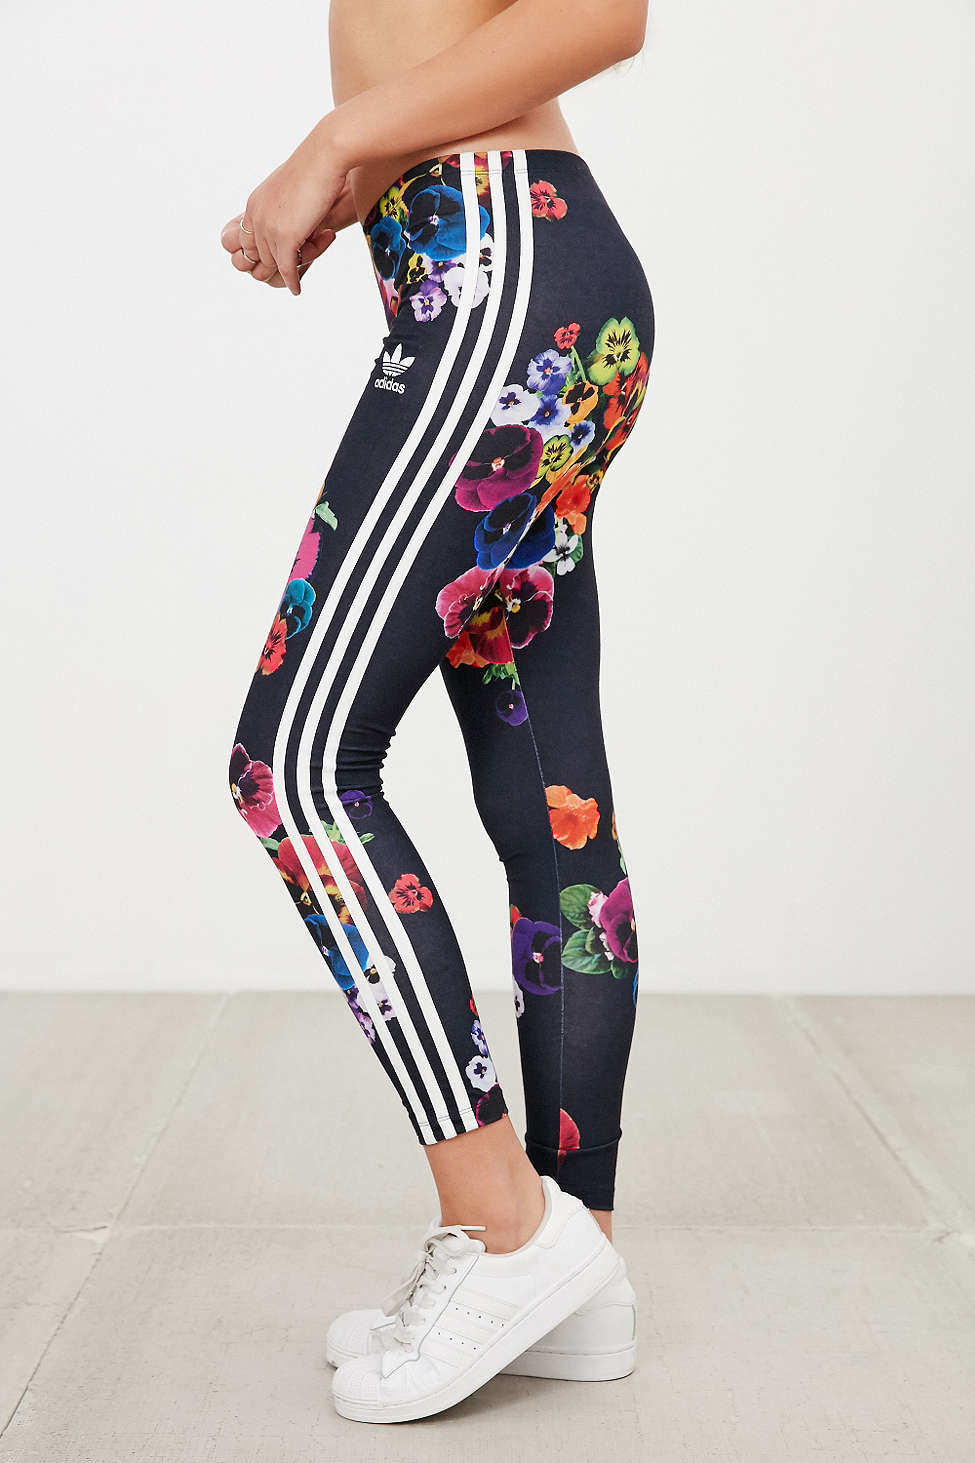 Lyst Adidas Originals Originals Floral Print Legging in